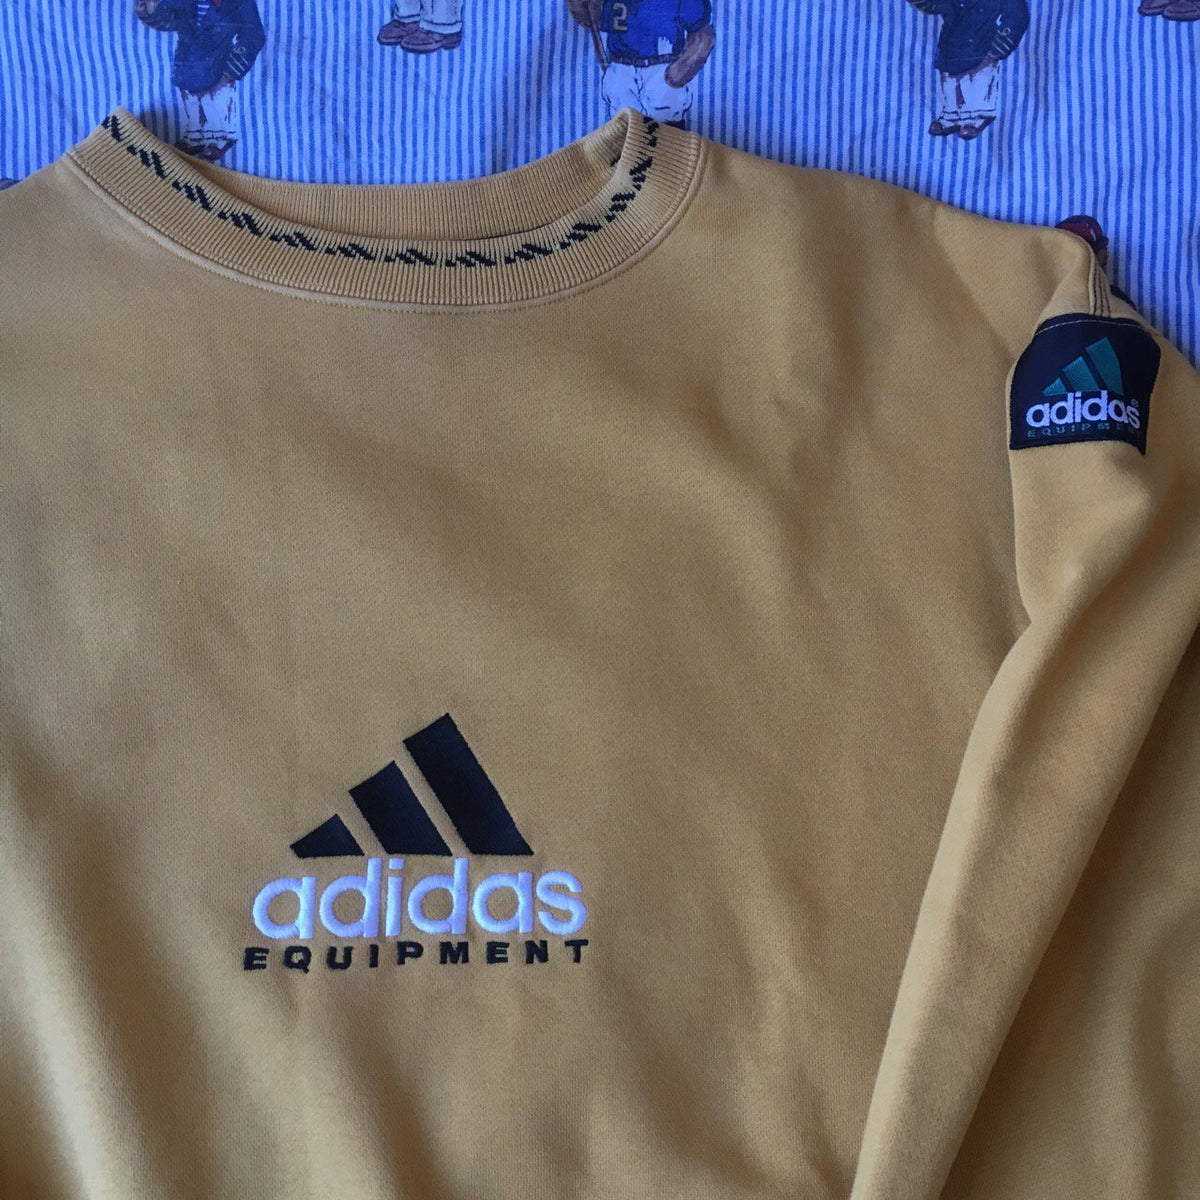 adidas equipment yellow sweatshirt